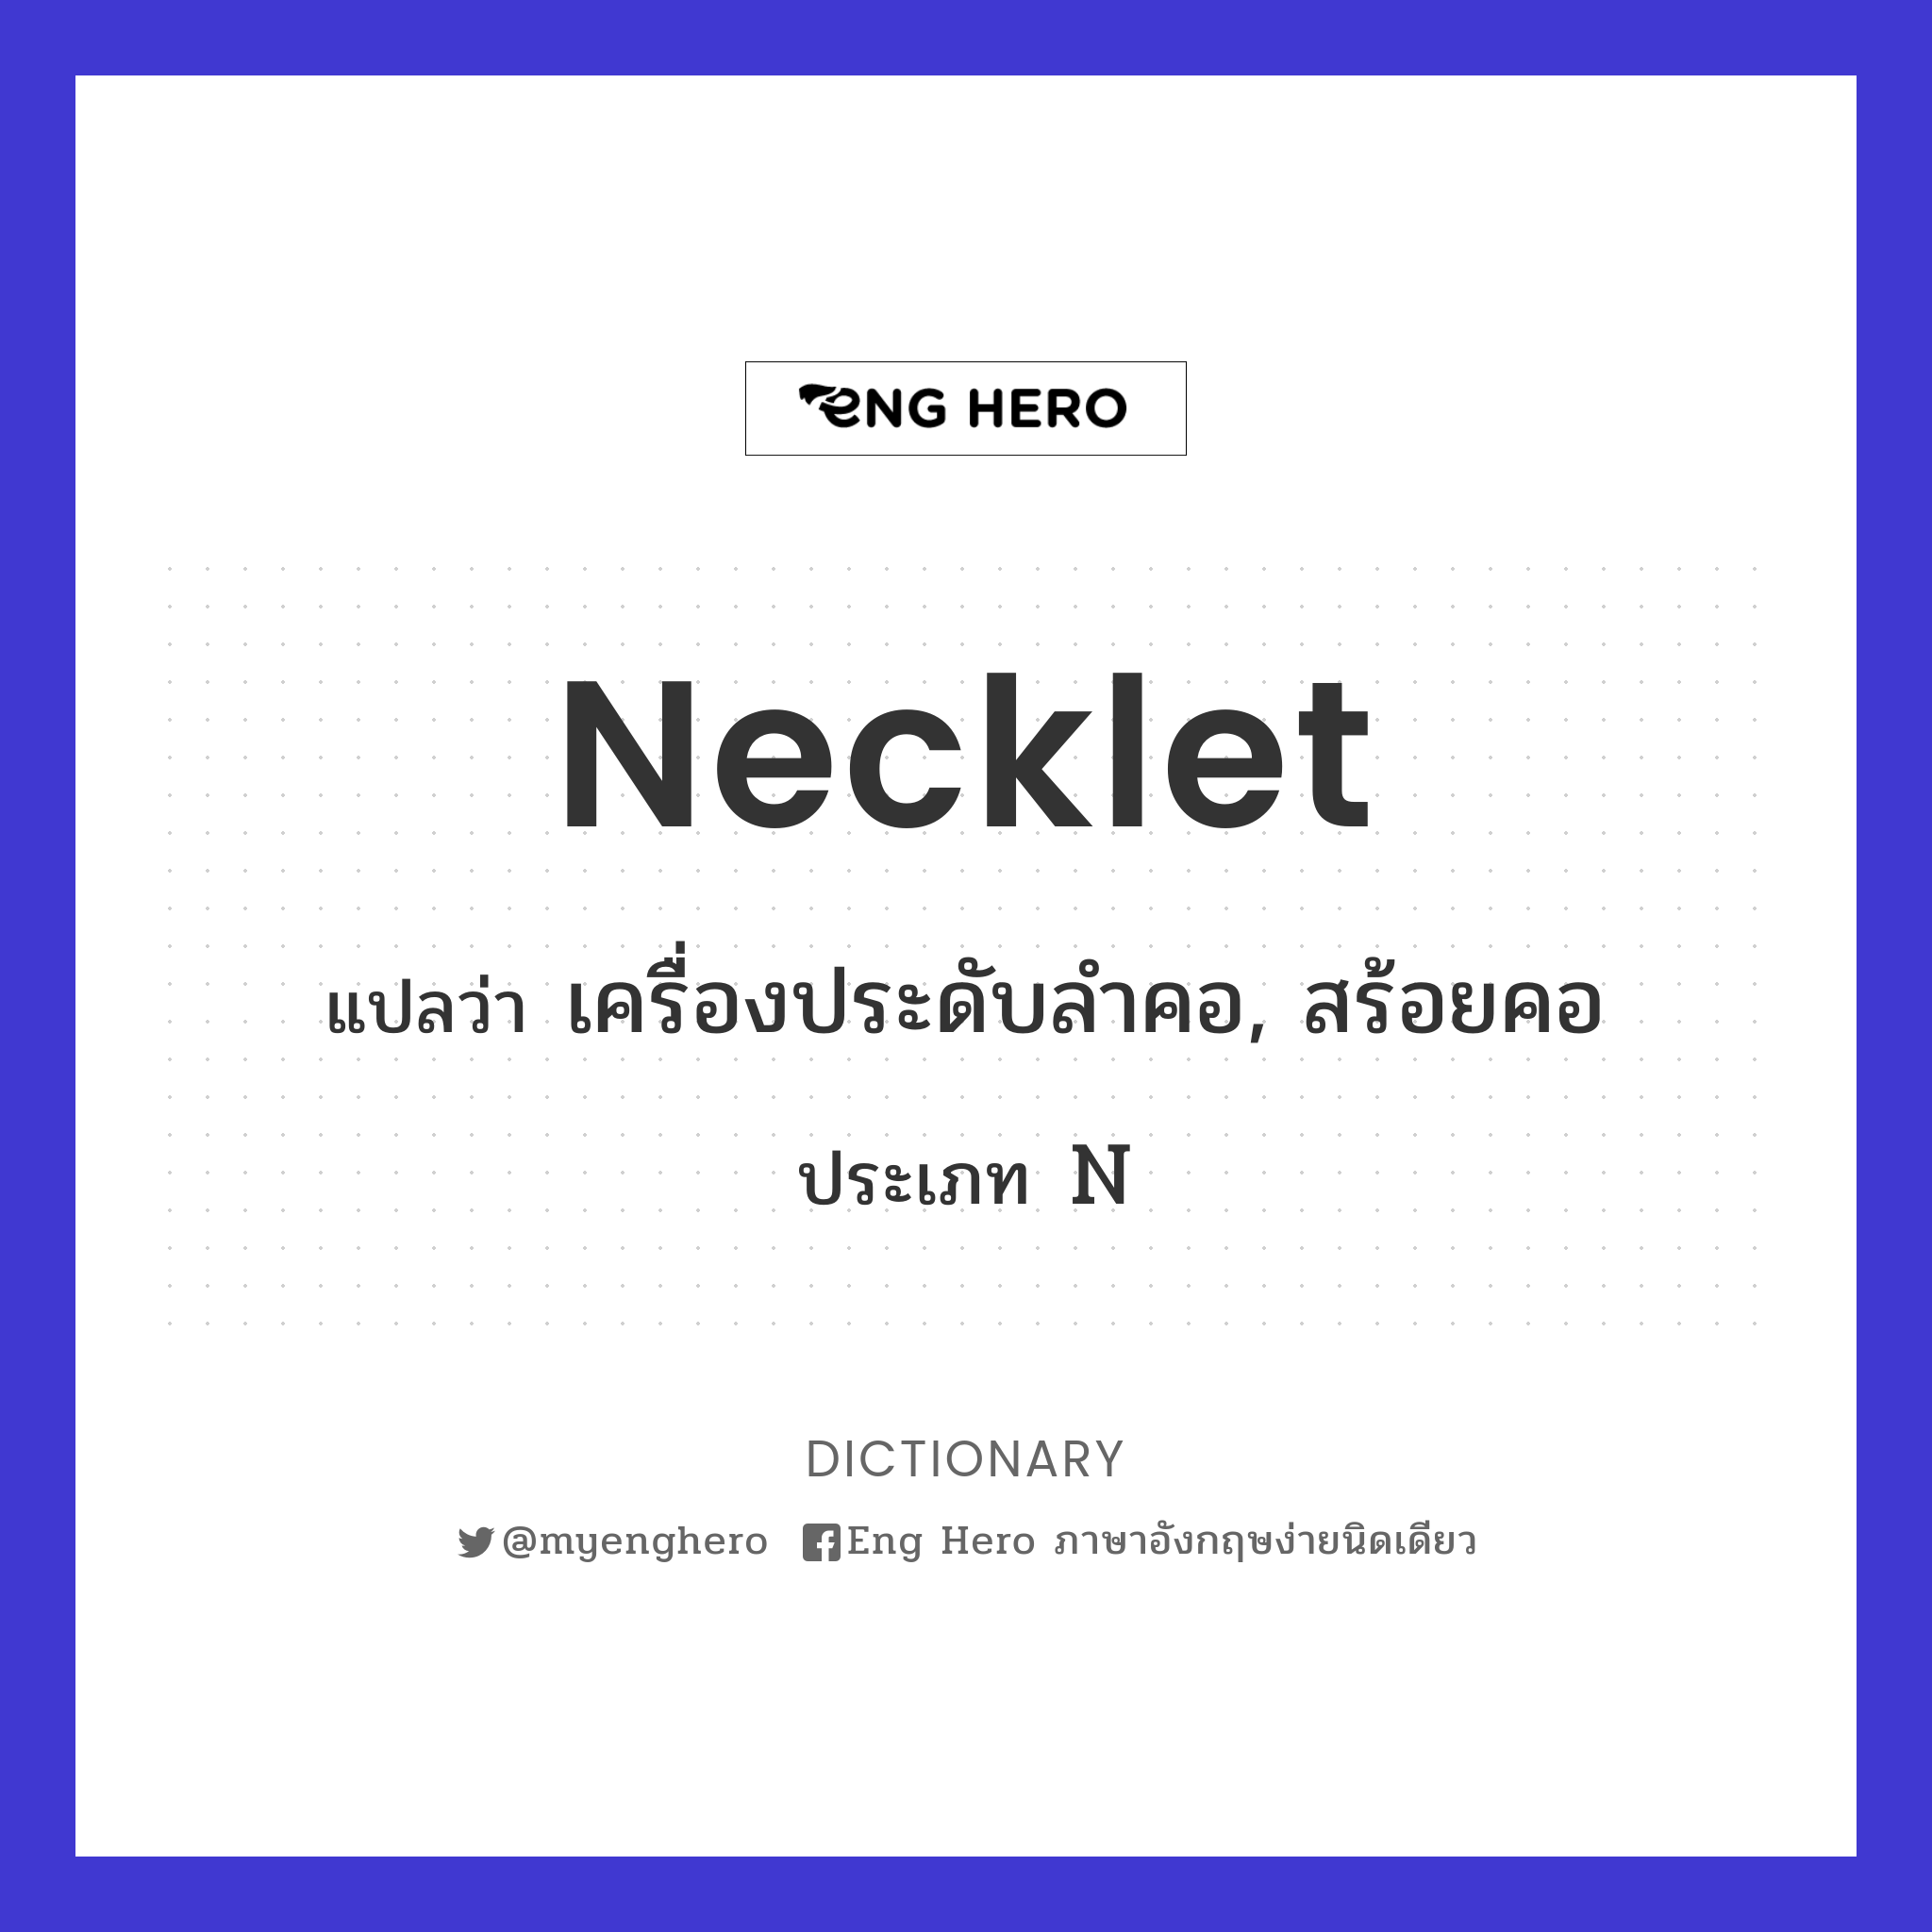 necklet